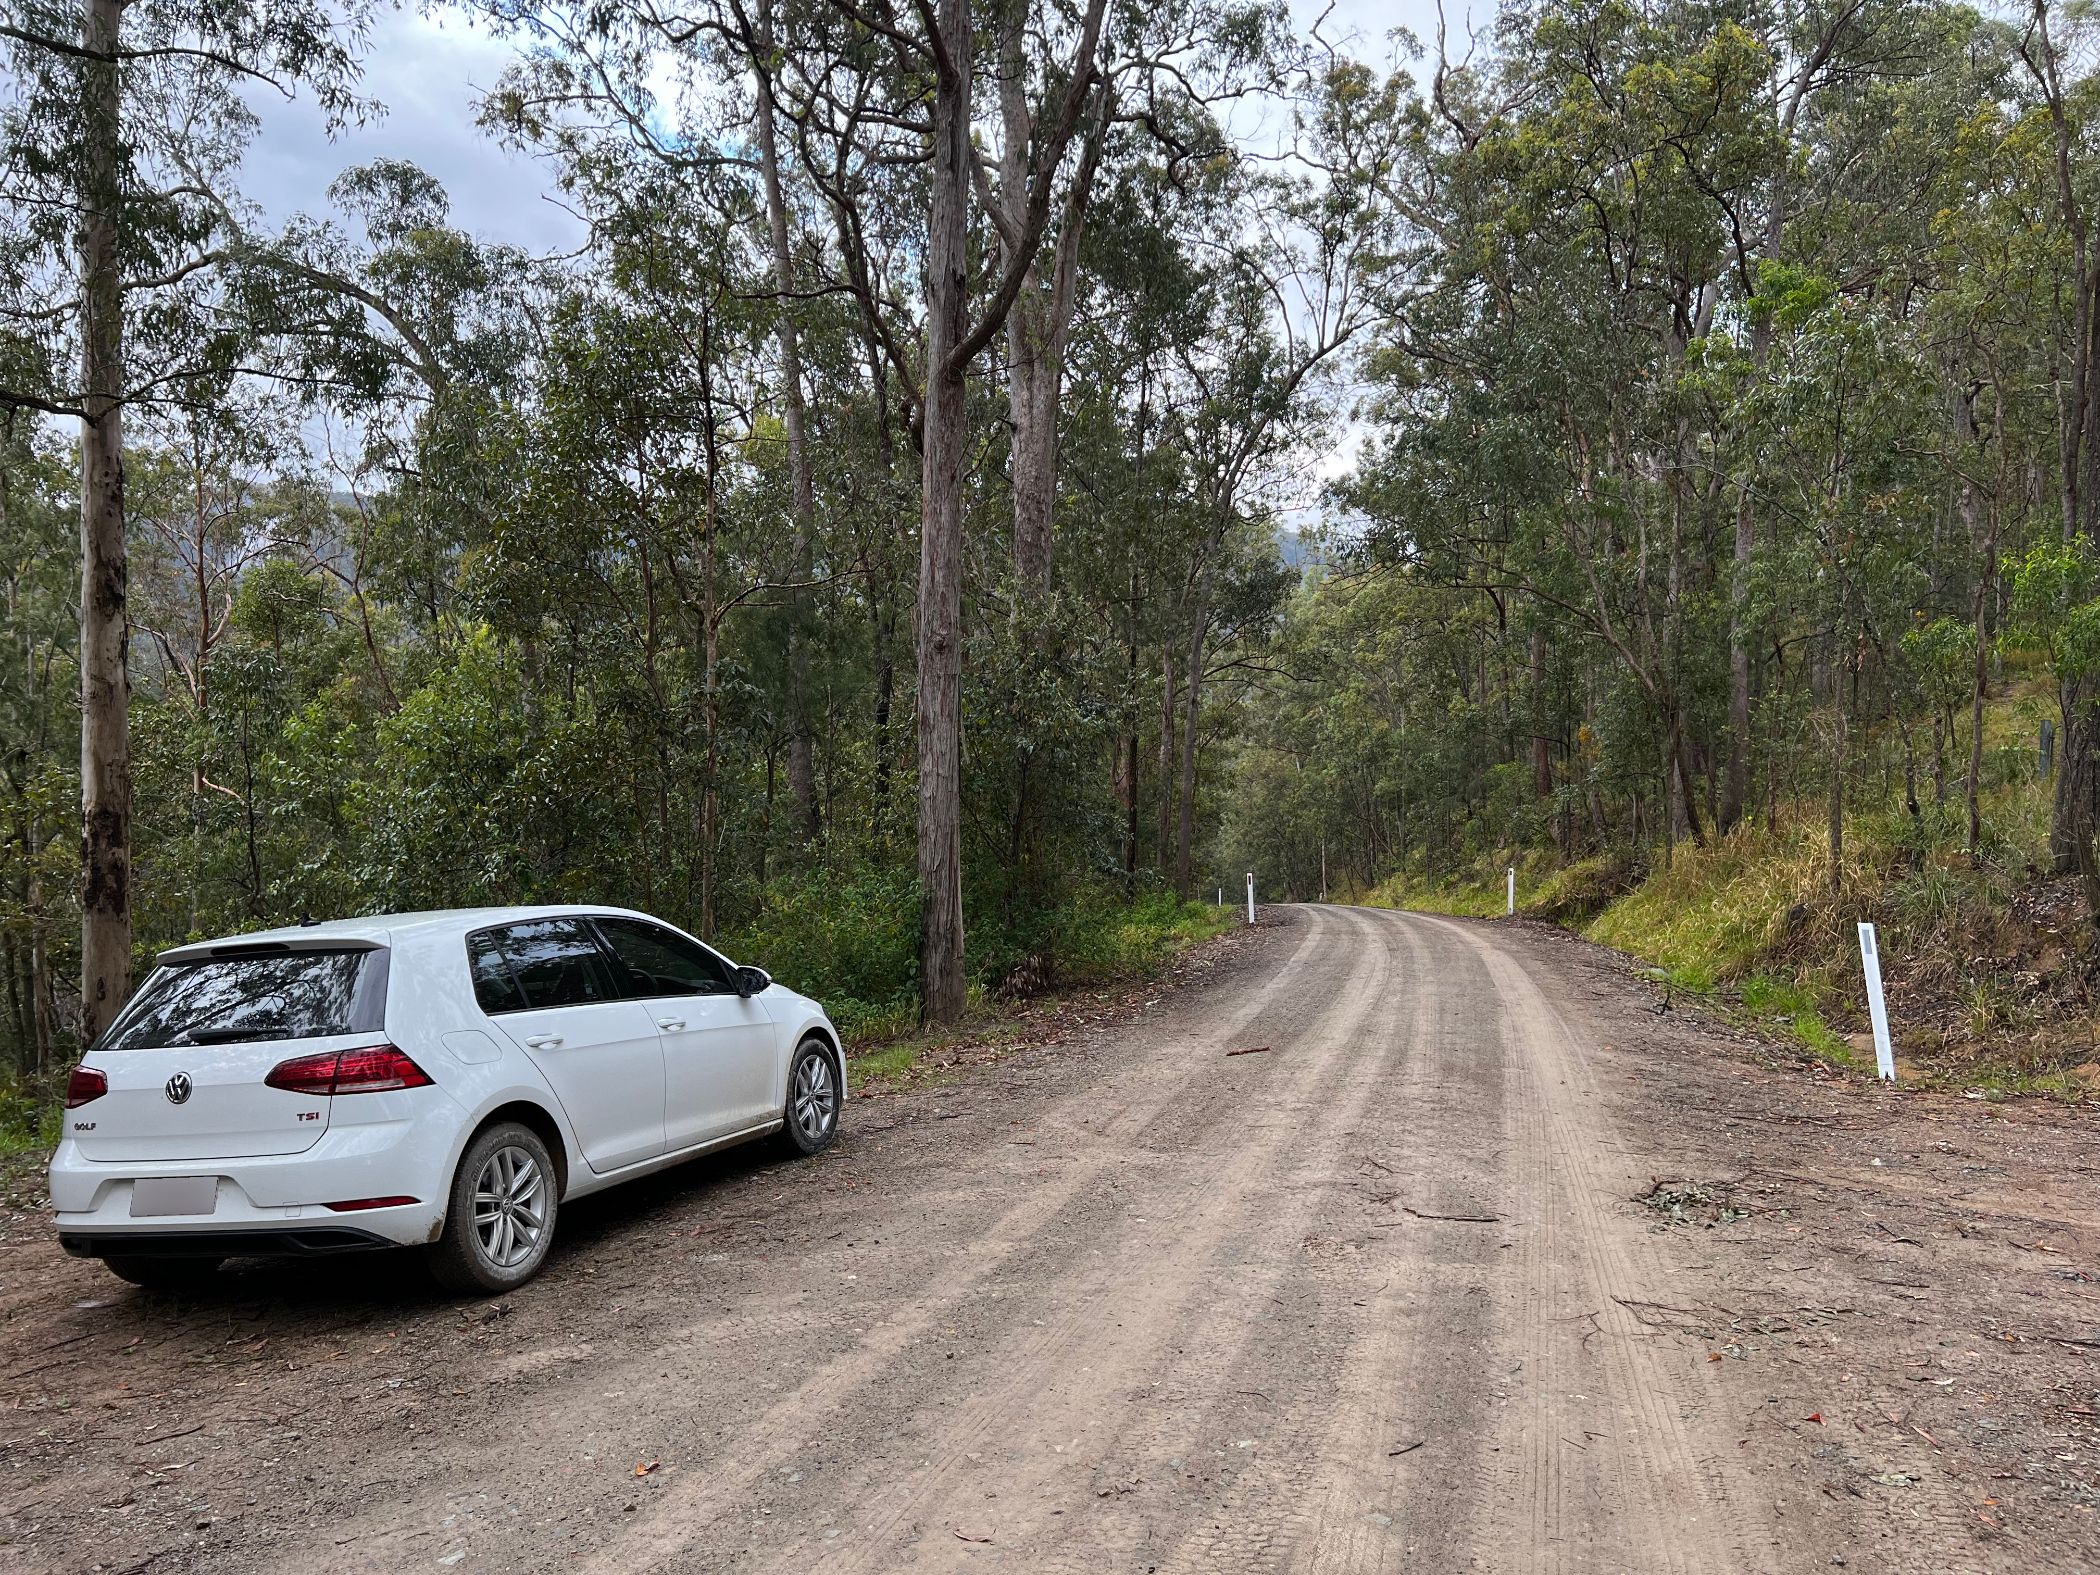 An unsealed rural Australian road.